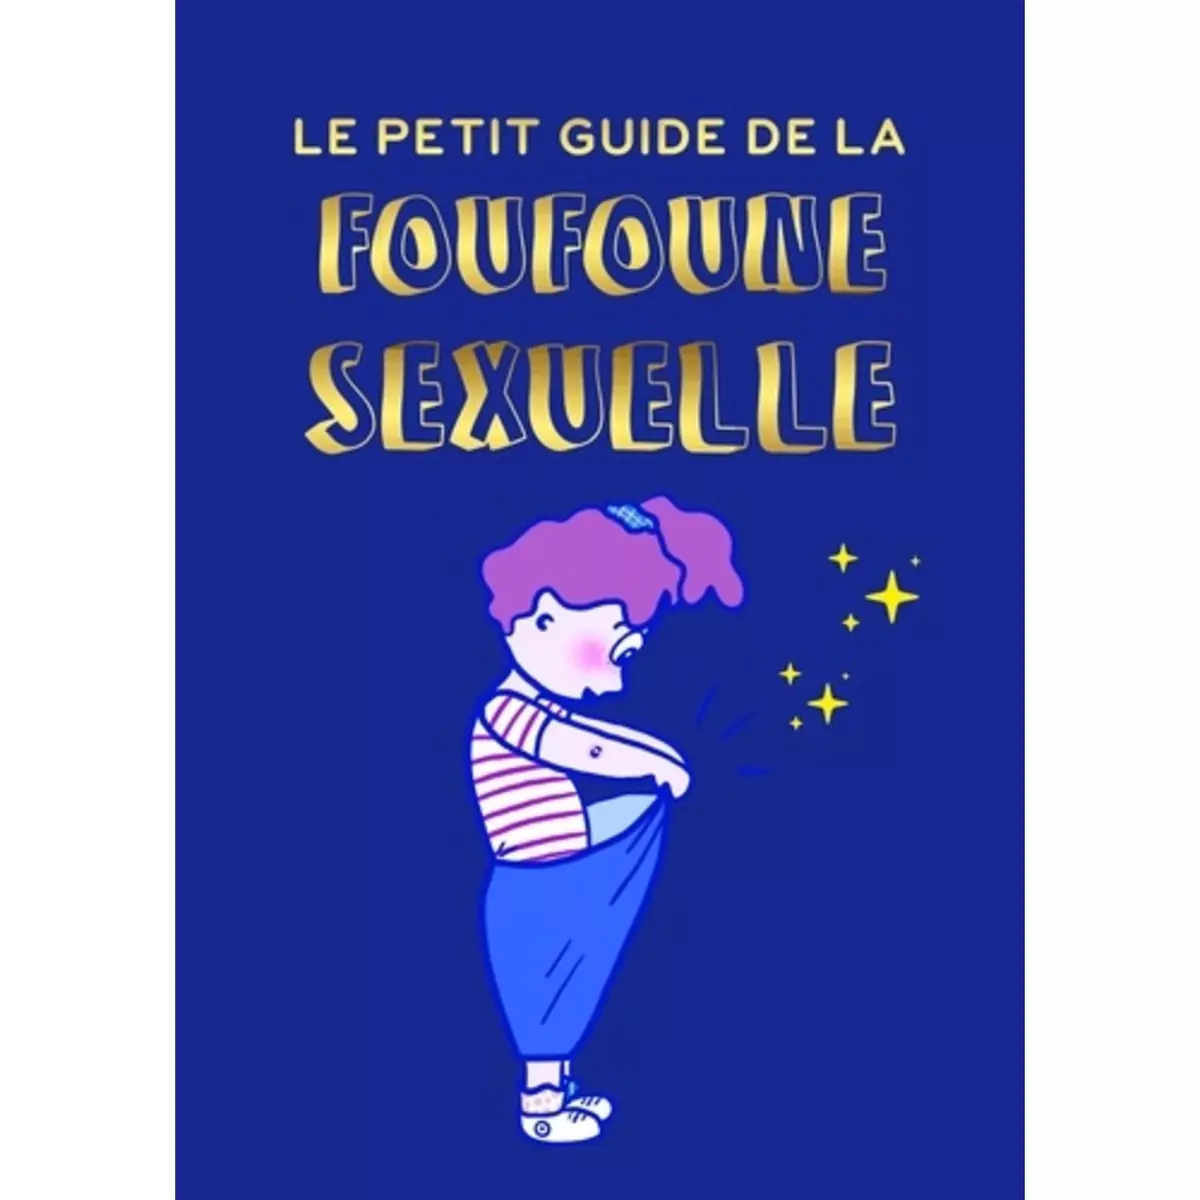  LE PETIT GUIDE DE LA FOUFOUNE SEXUELLE. TOME 1. GUIDE D'EDUCATION SEXUELLE POUR ENFANTS, BIENVEILLANT, FEMINISTE ET INCLUSIF , Pietri Julia